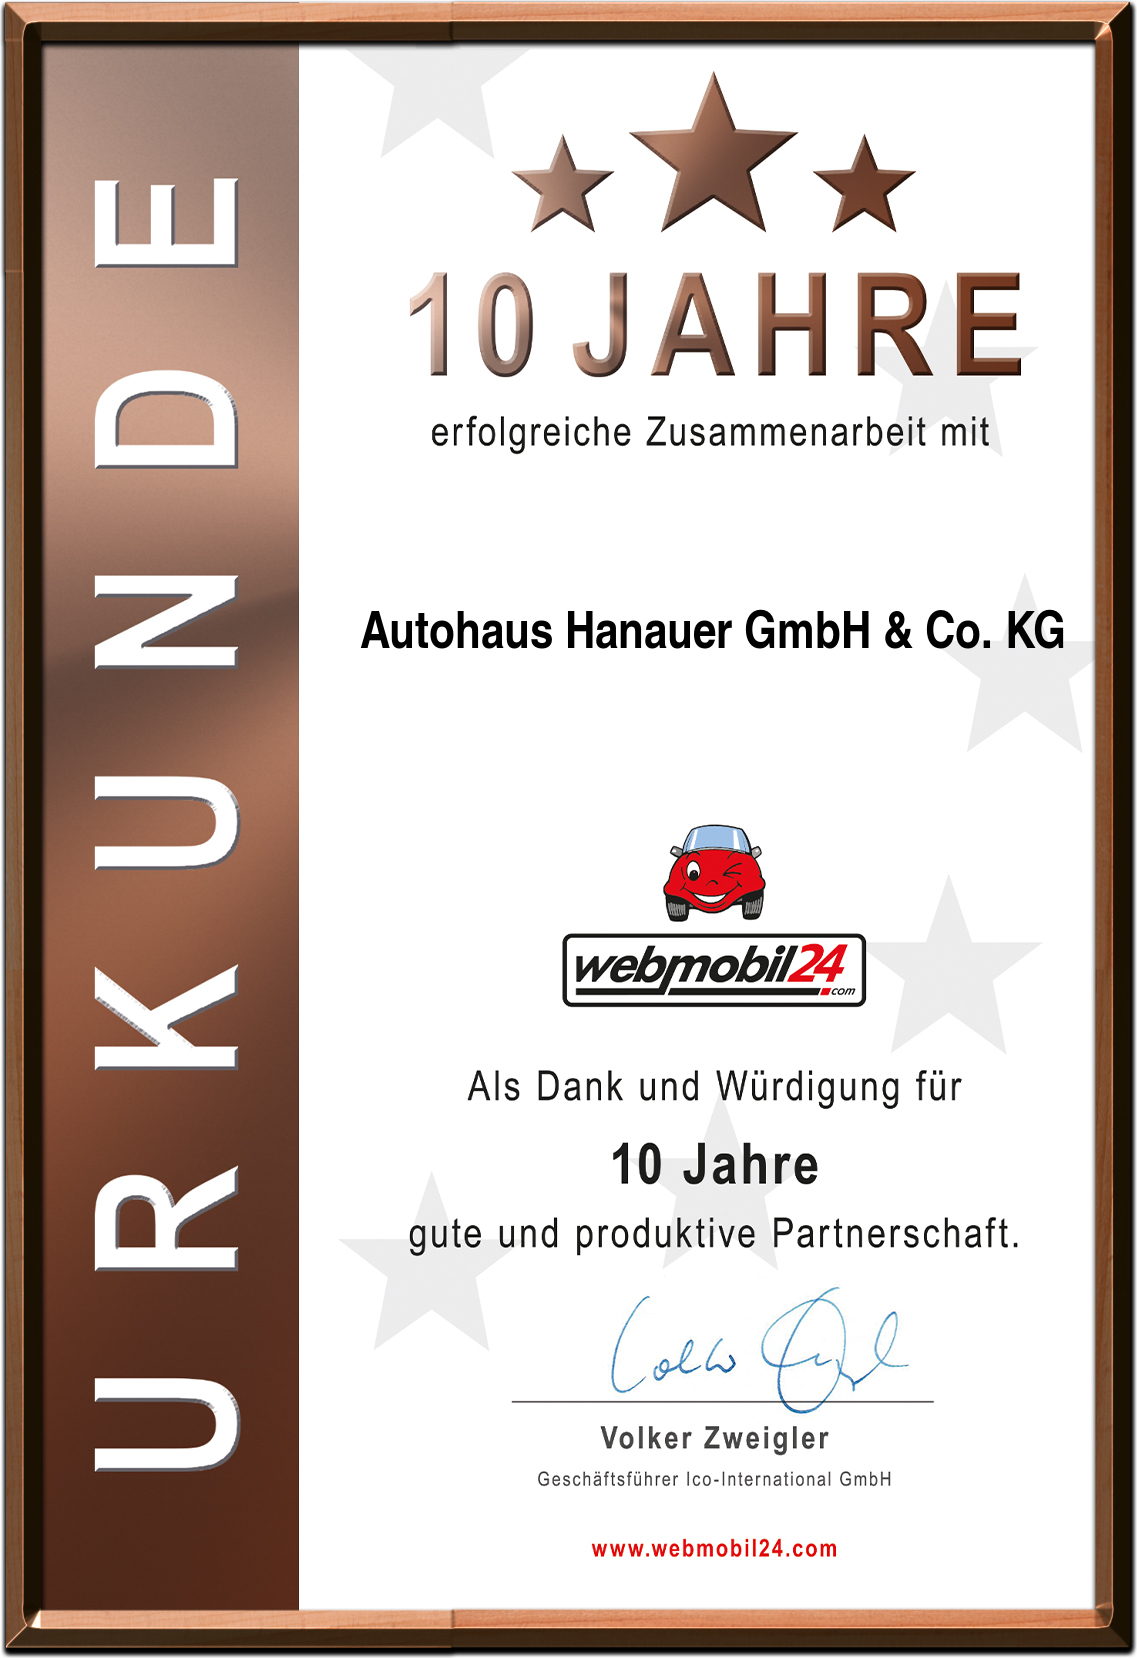 Autohaus Hanauer GmbH & Co. KG